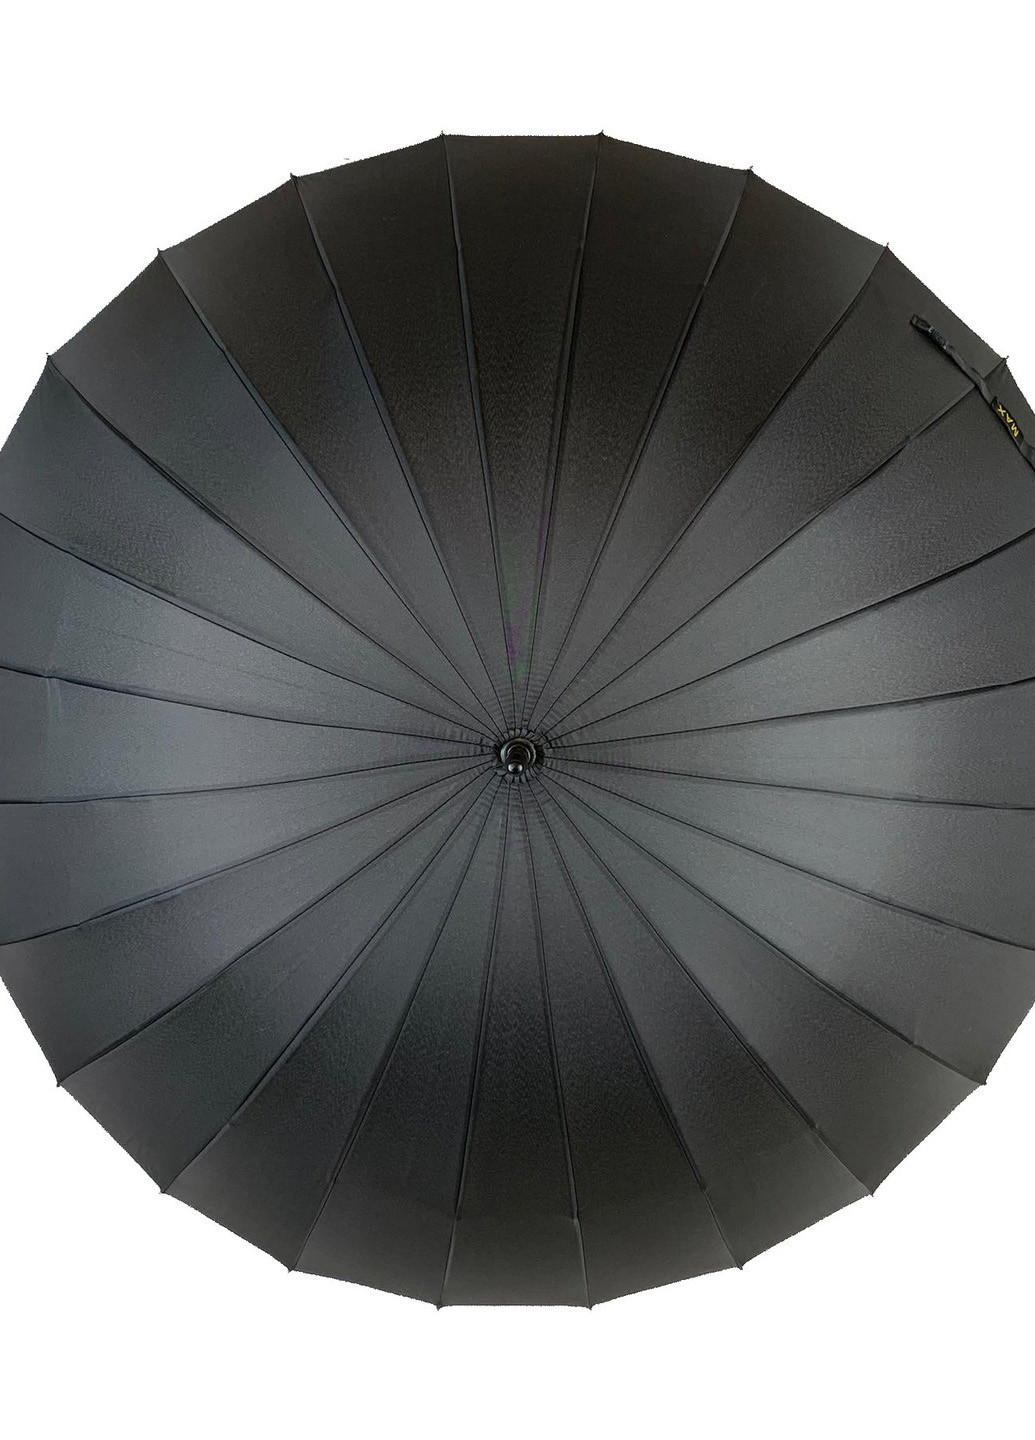 Мужской зонт механический (611) 99 см Max (189979004)